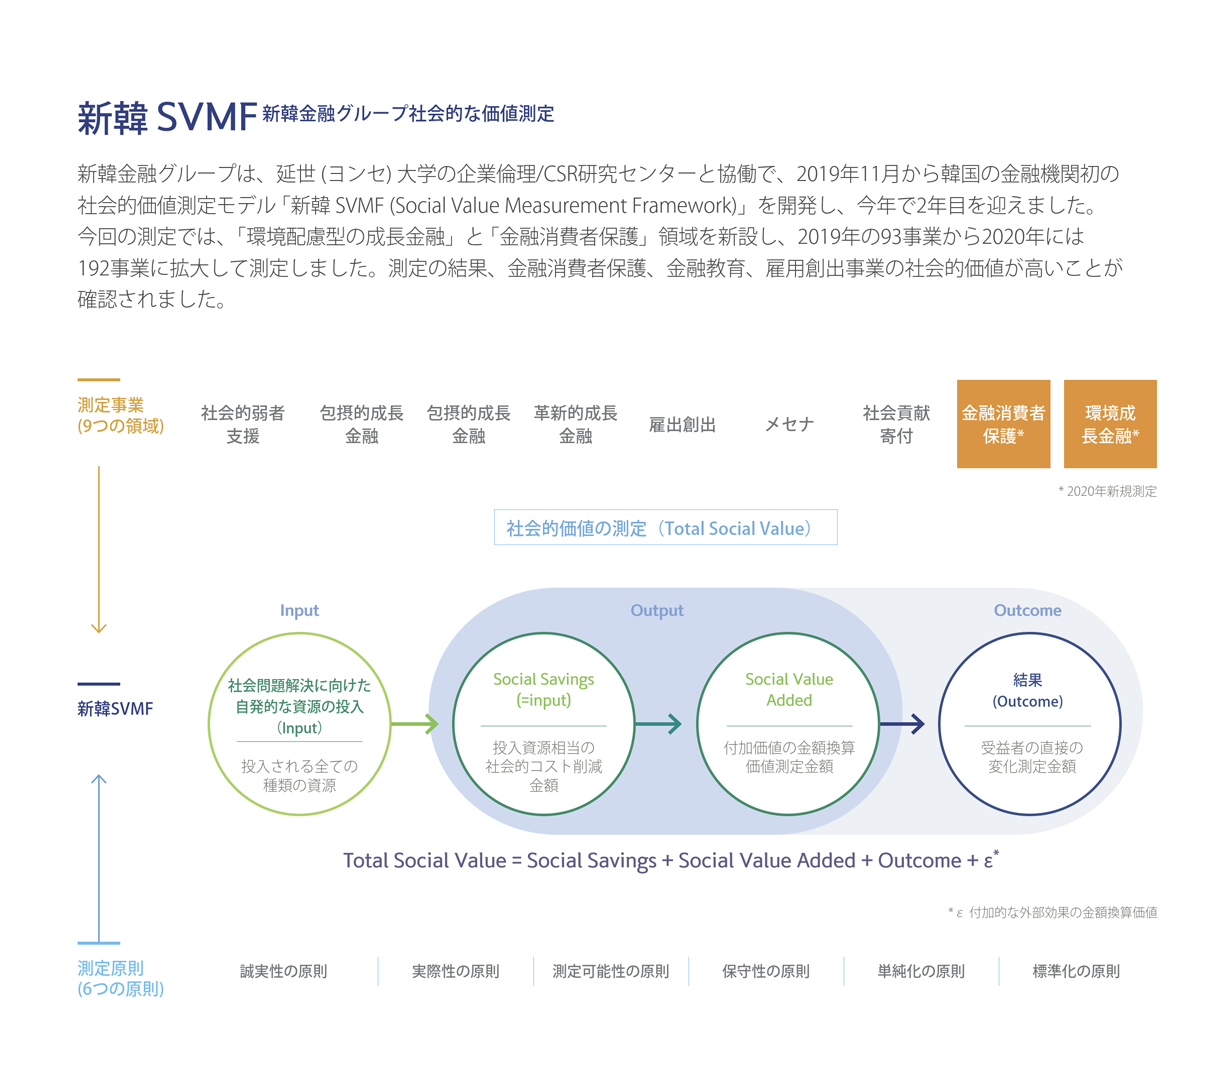 Shinhan Social Value Measurement Framework(SVMF)